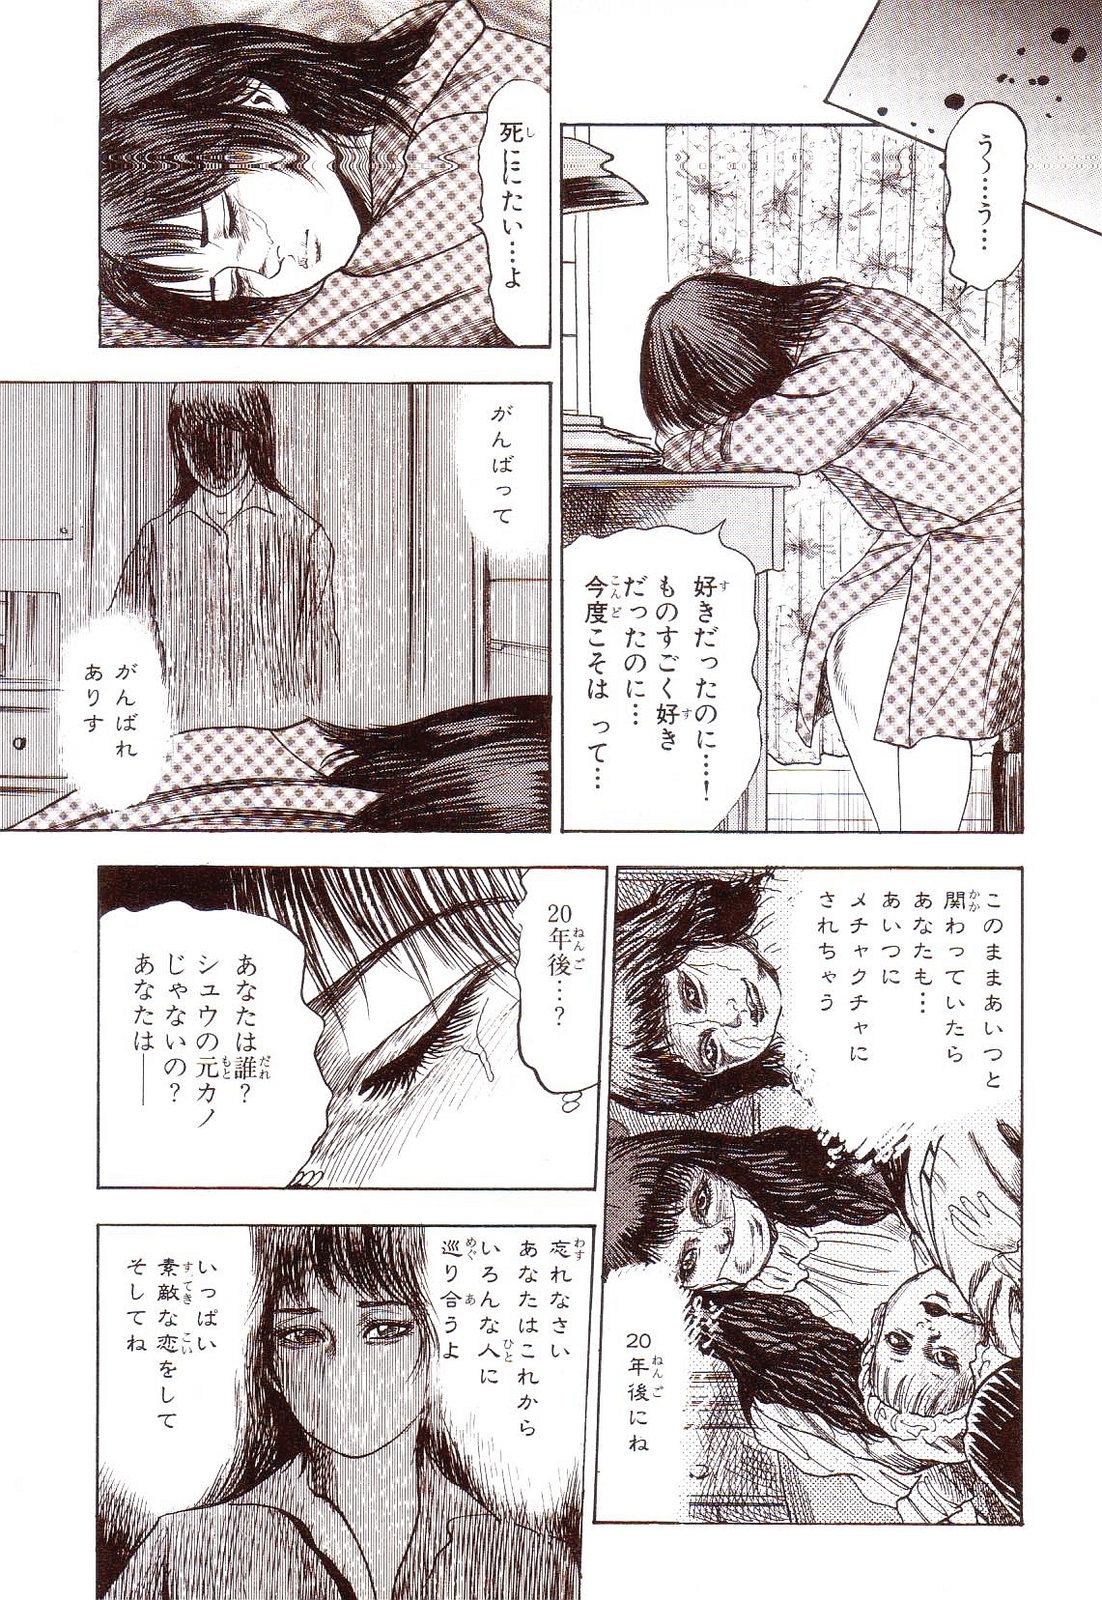 [Sanjou Tomomi] Inu ni Naritai -kyoufu manga shugyoku sakuhinshiyuu- 155